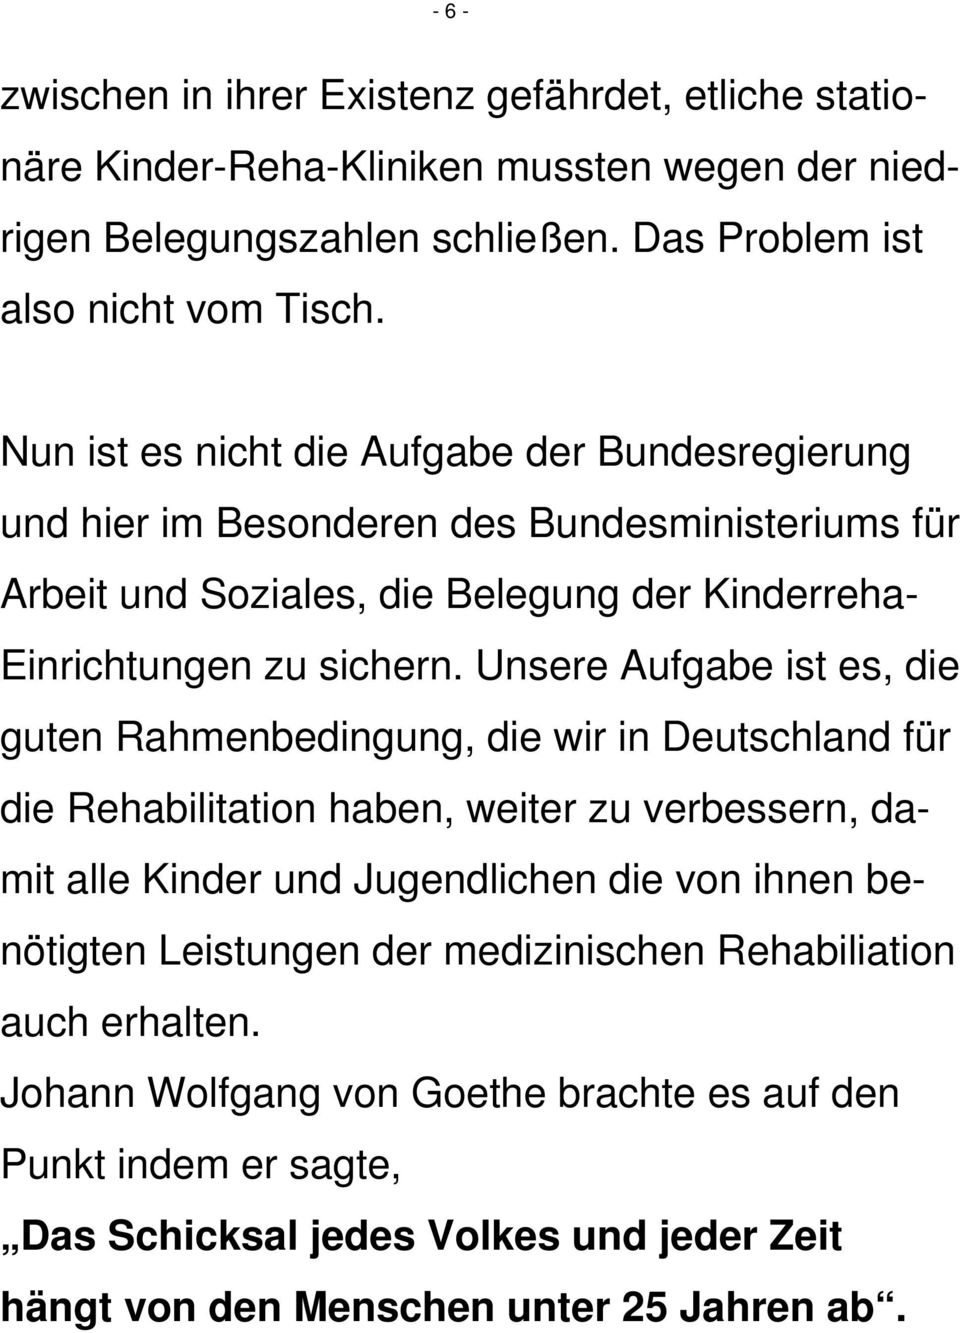 Unsere Aufgabe ist es, die guten Rahmenbedingung, die wir in Deutschland für die Rehabilitation haben, weiter zu verbessern, damit alle Kinder und Jugendlichen die von ihnen benötigten